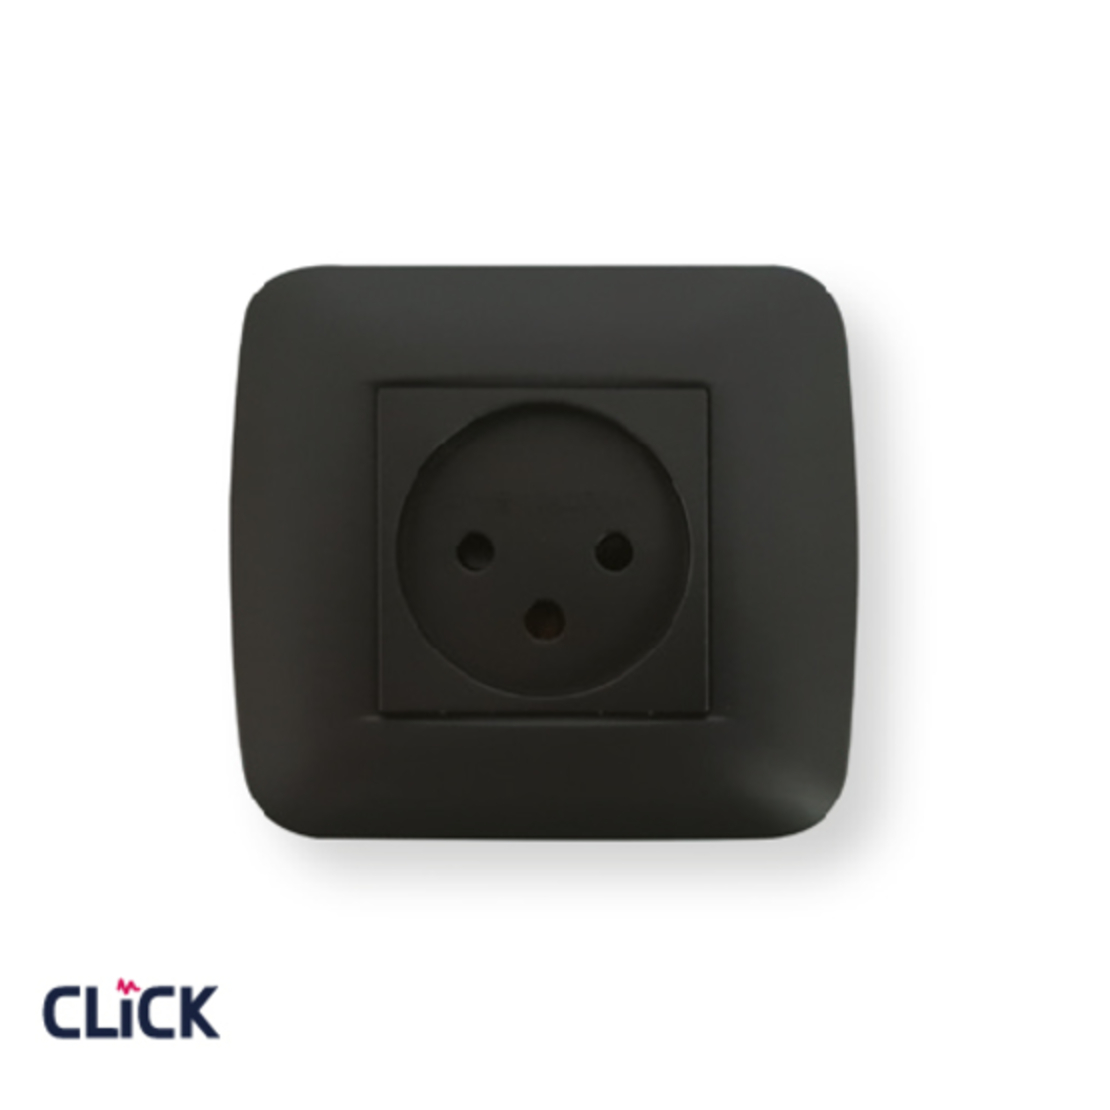 שקע ישראלי CLICK תלת פיני לקופסא עגולה (55) מתח/זרם 230/16A בצבע שחור מט FETAYA